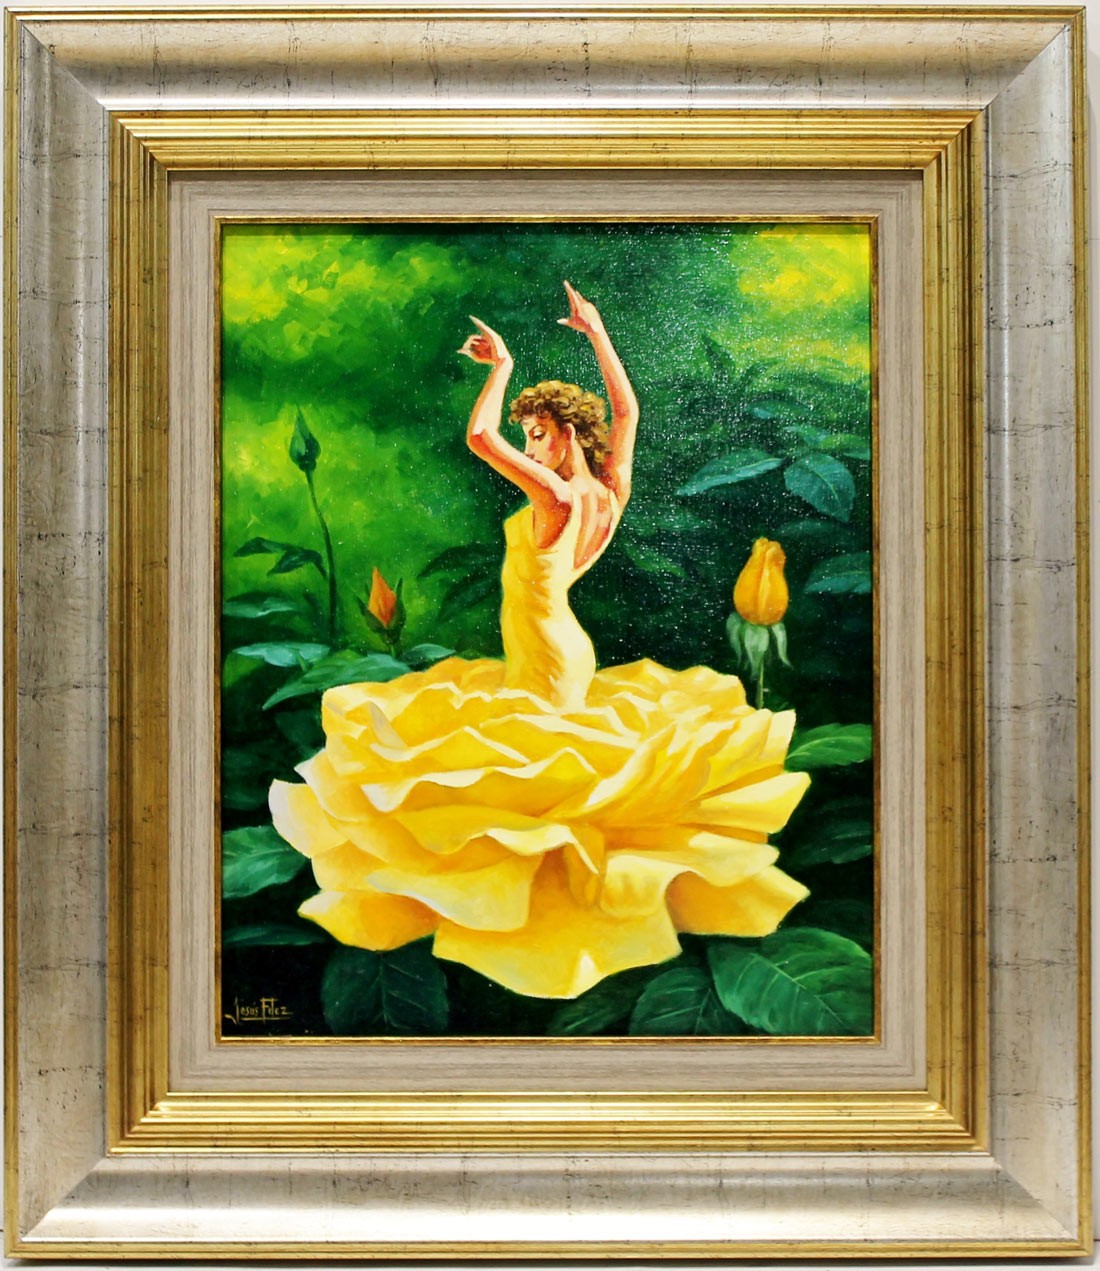 Jesús Fernández: Yellow rose dancer